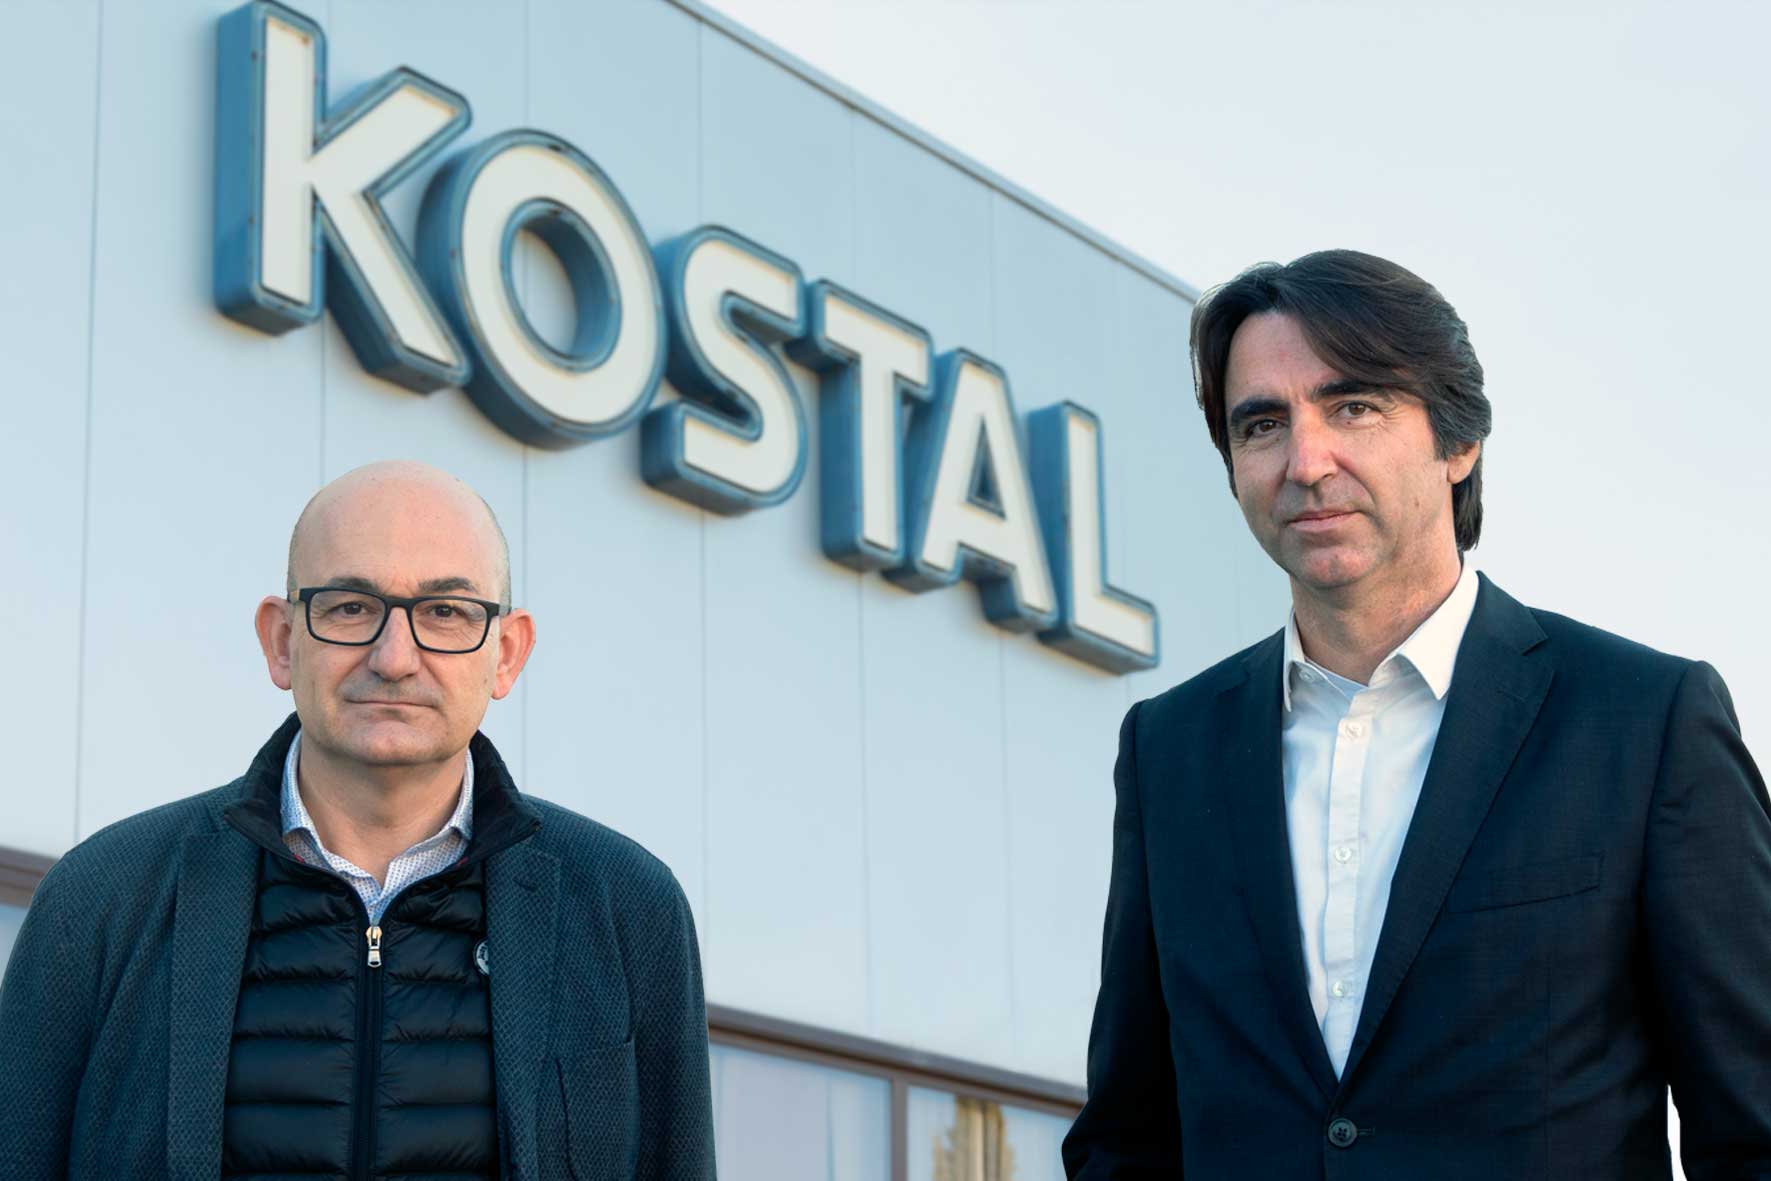 Entrevista a Josep Senar i Ricard Grau sobre la implantació d’una app corporativa a KOSTAL Group